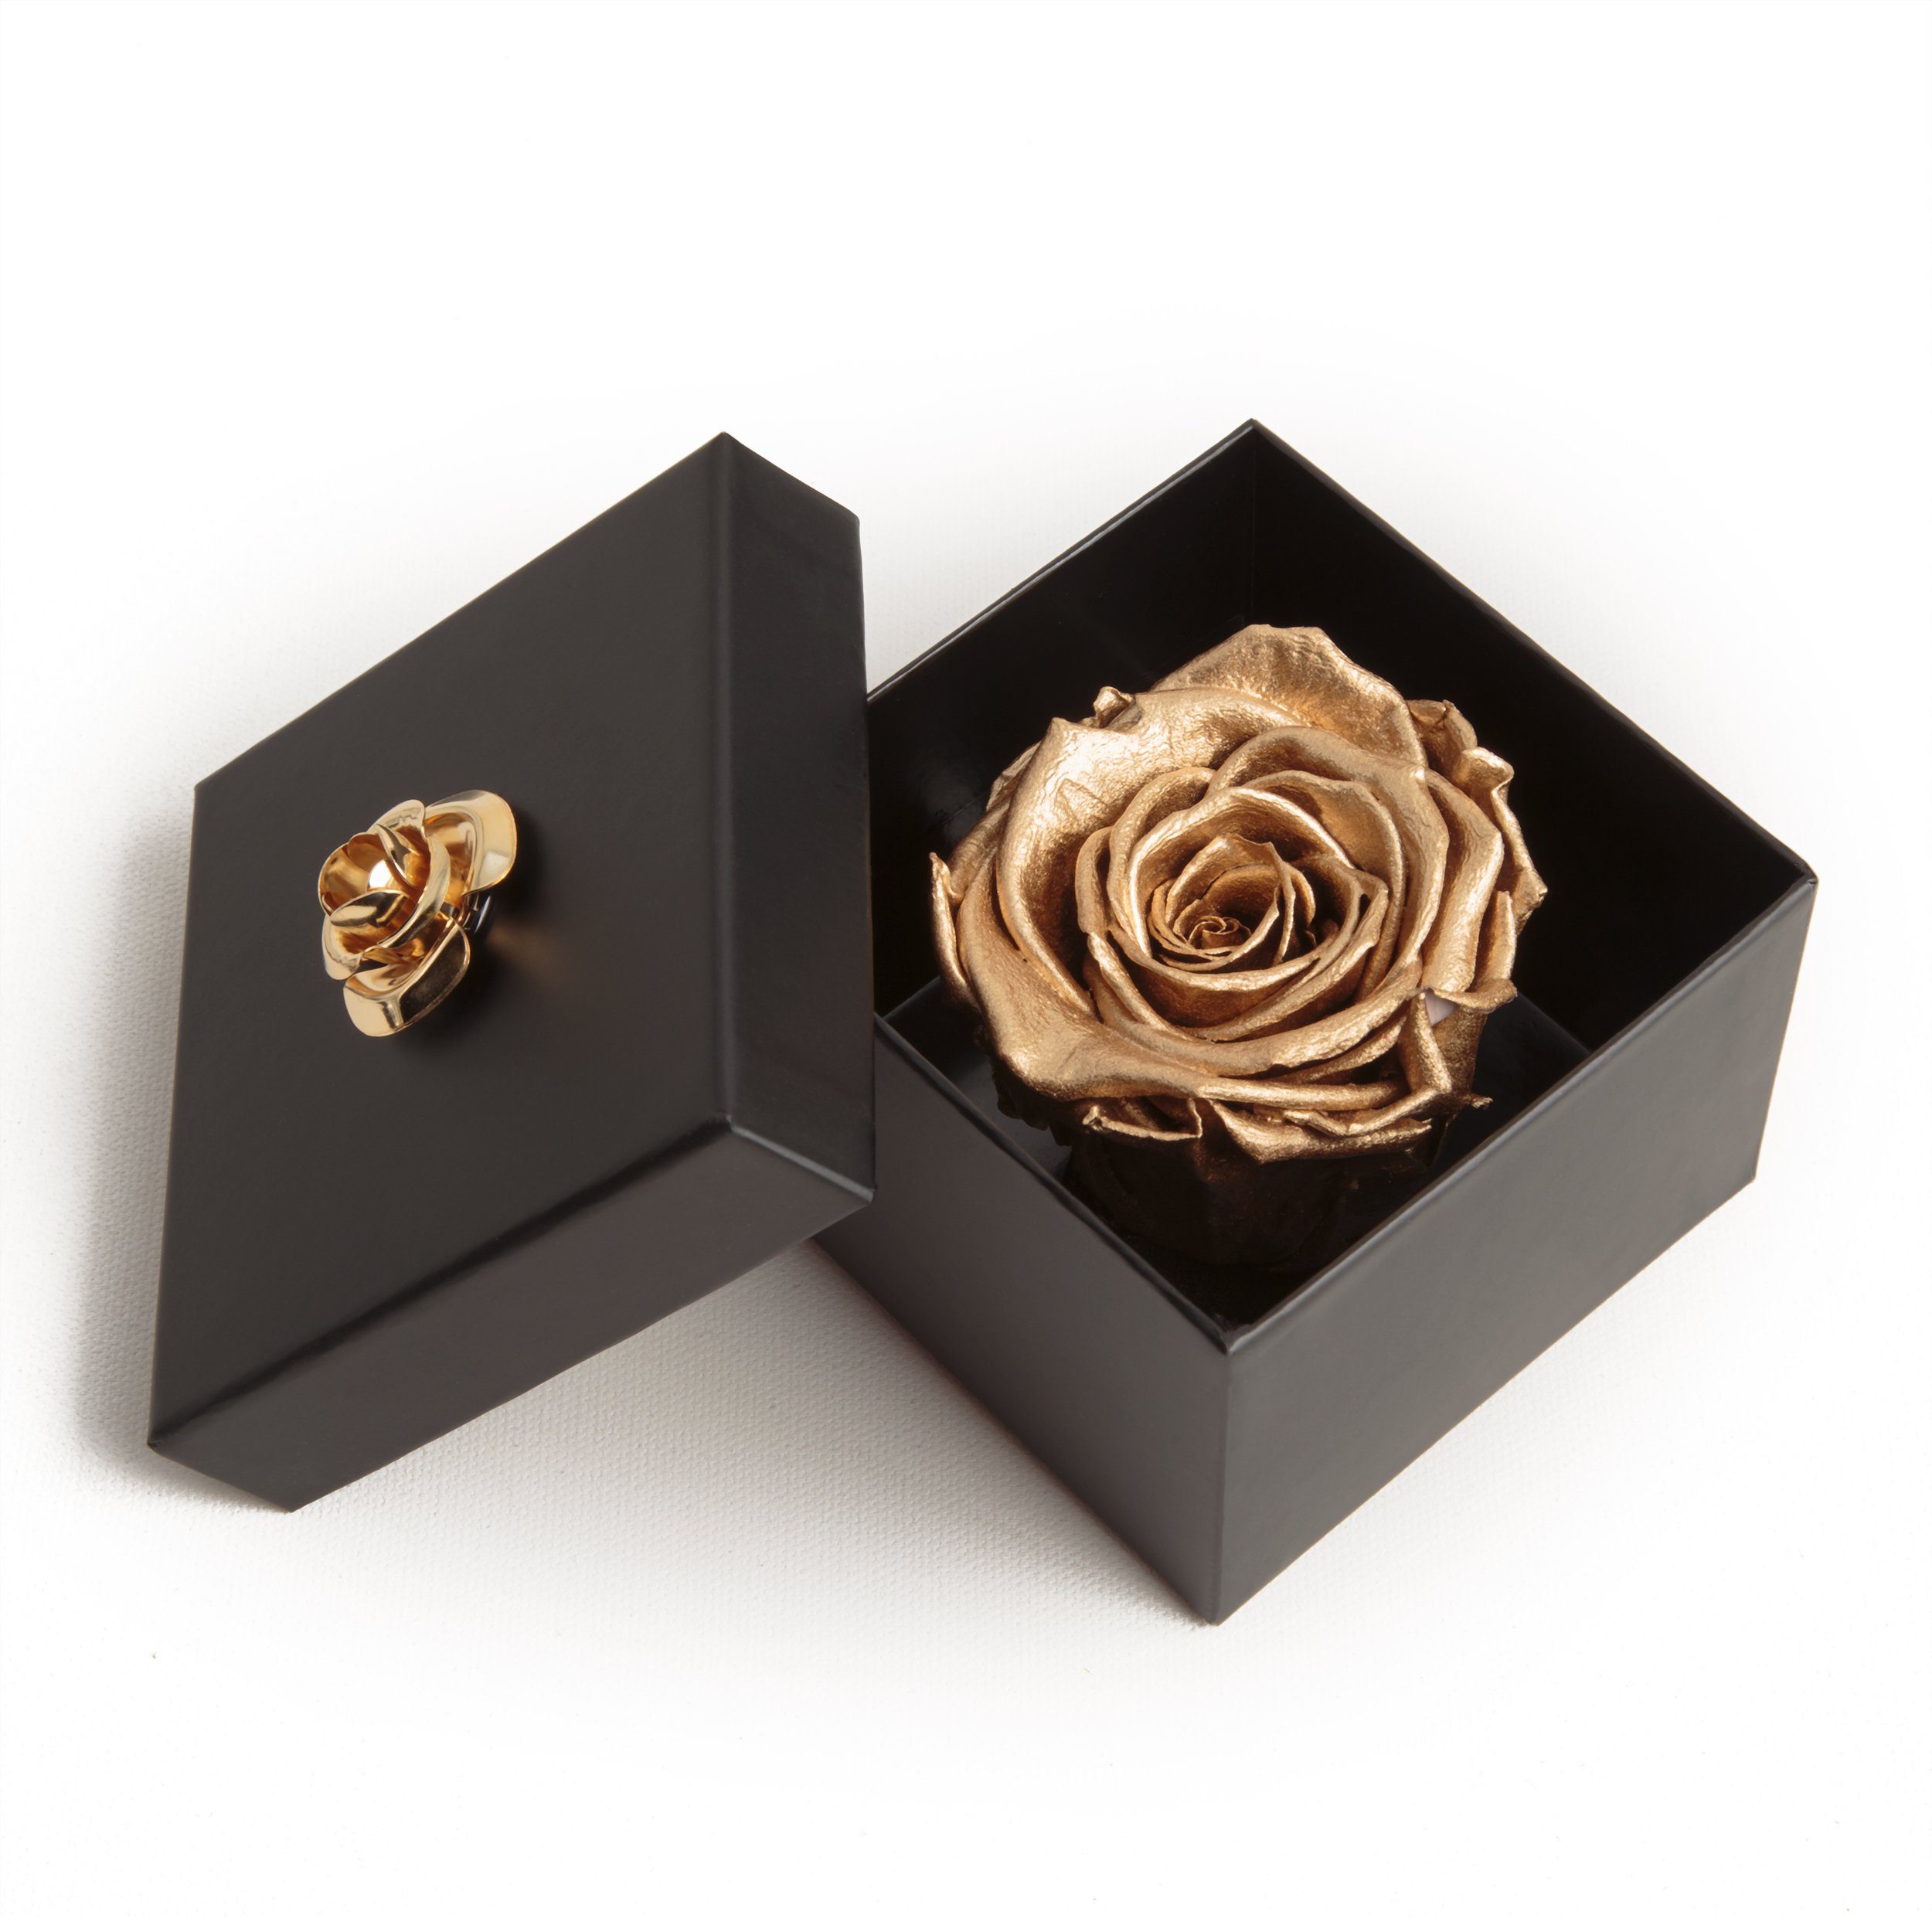 Kunstblume 1 Infinity Rose haltbar 3 Jahre Rose in Box mit Blumendeckel Rose, ROSEMARIE SCHULZ Heidelberg, Höhe 6.5 cm, Echte Rose haltbar bis zu 3 Jahre gold